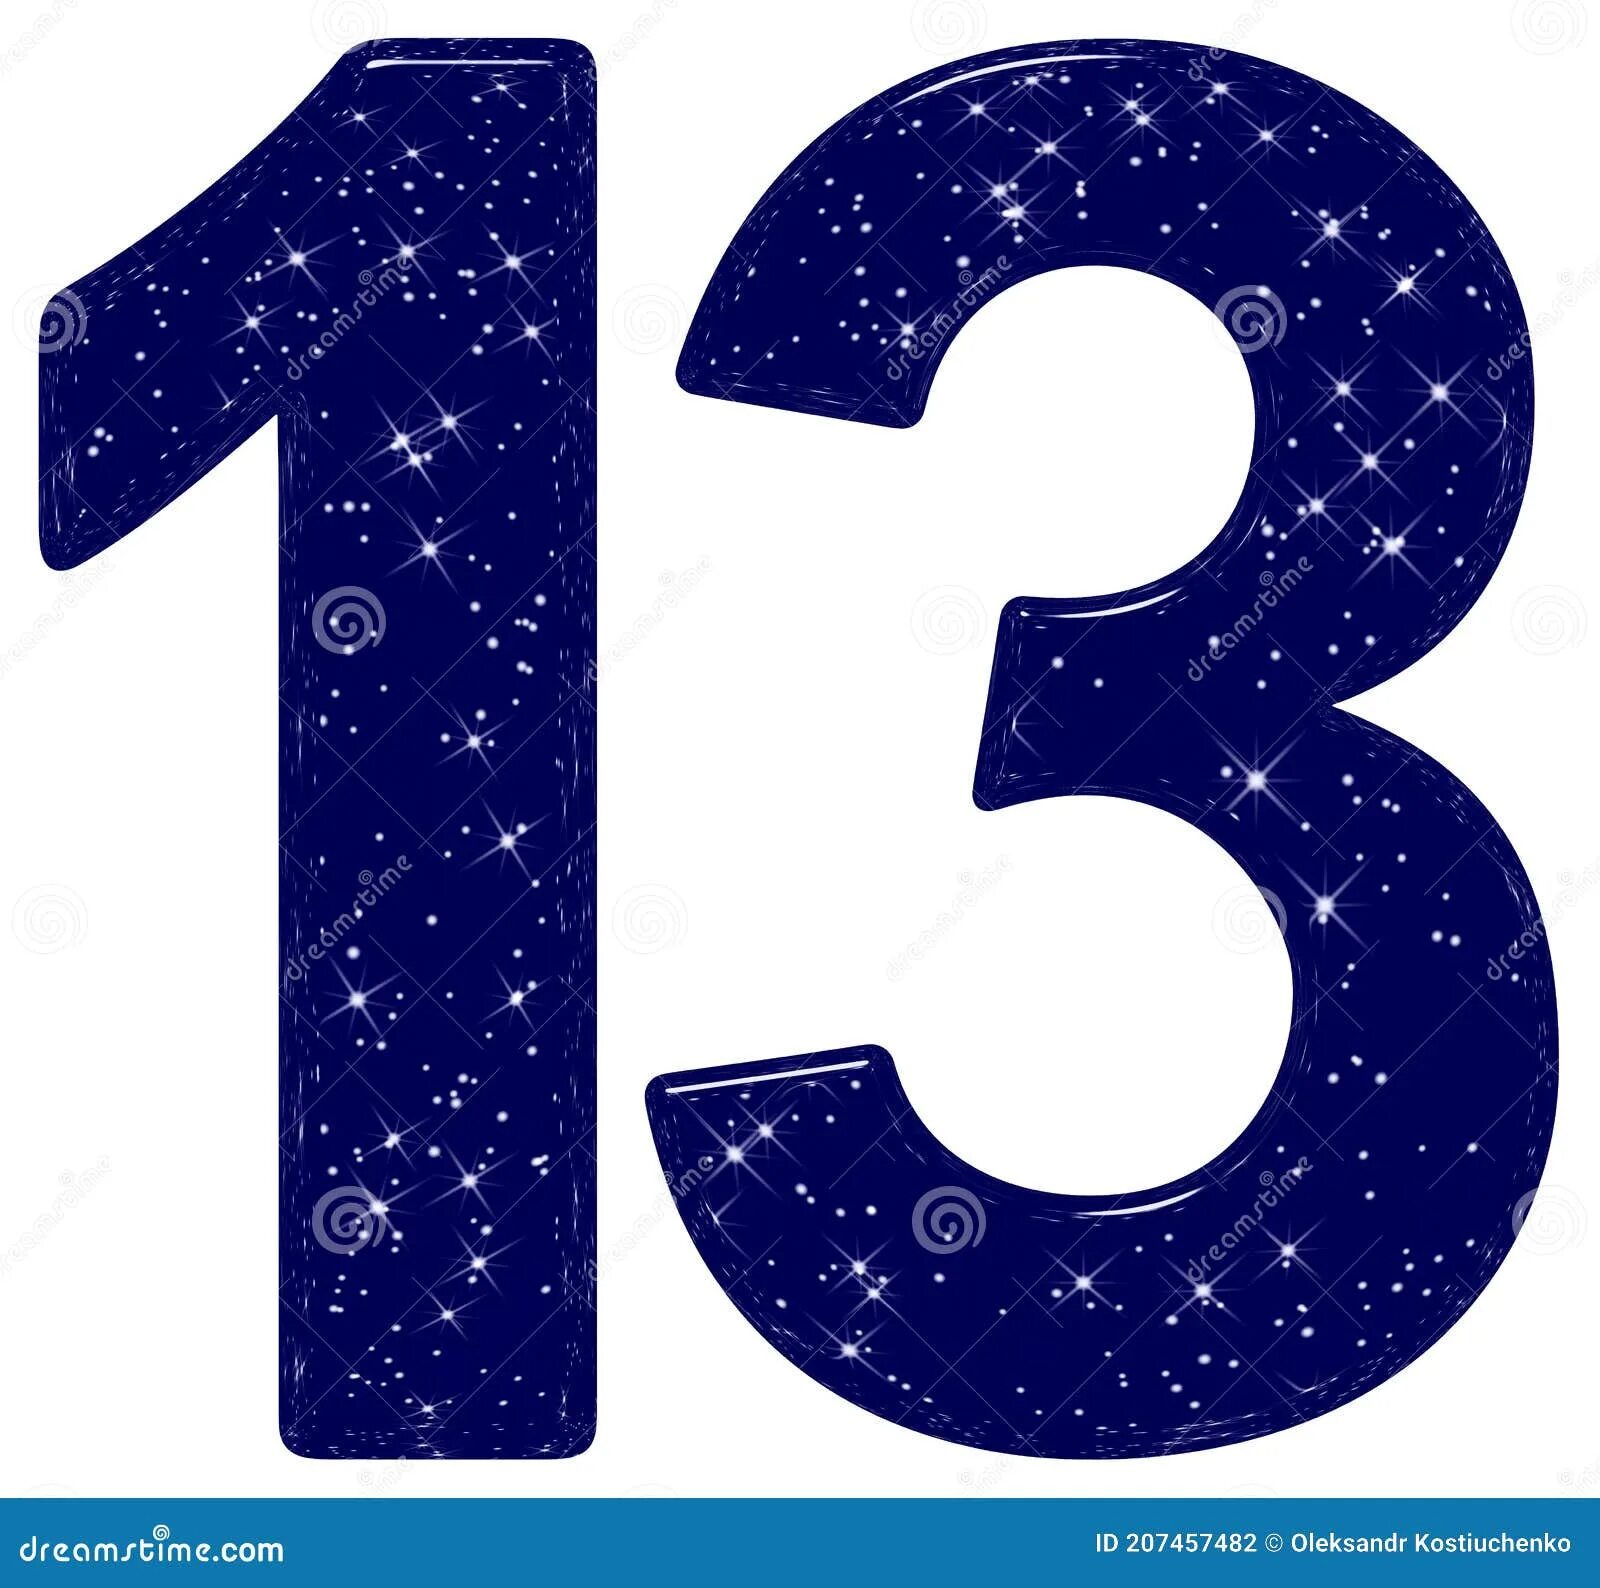 2 3 13 78. Цифра 13 на прозрачном фоне. Цифра 13 со звездочкой. Число 13 на белом фоне. 13 На 13 звезда.